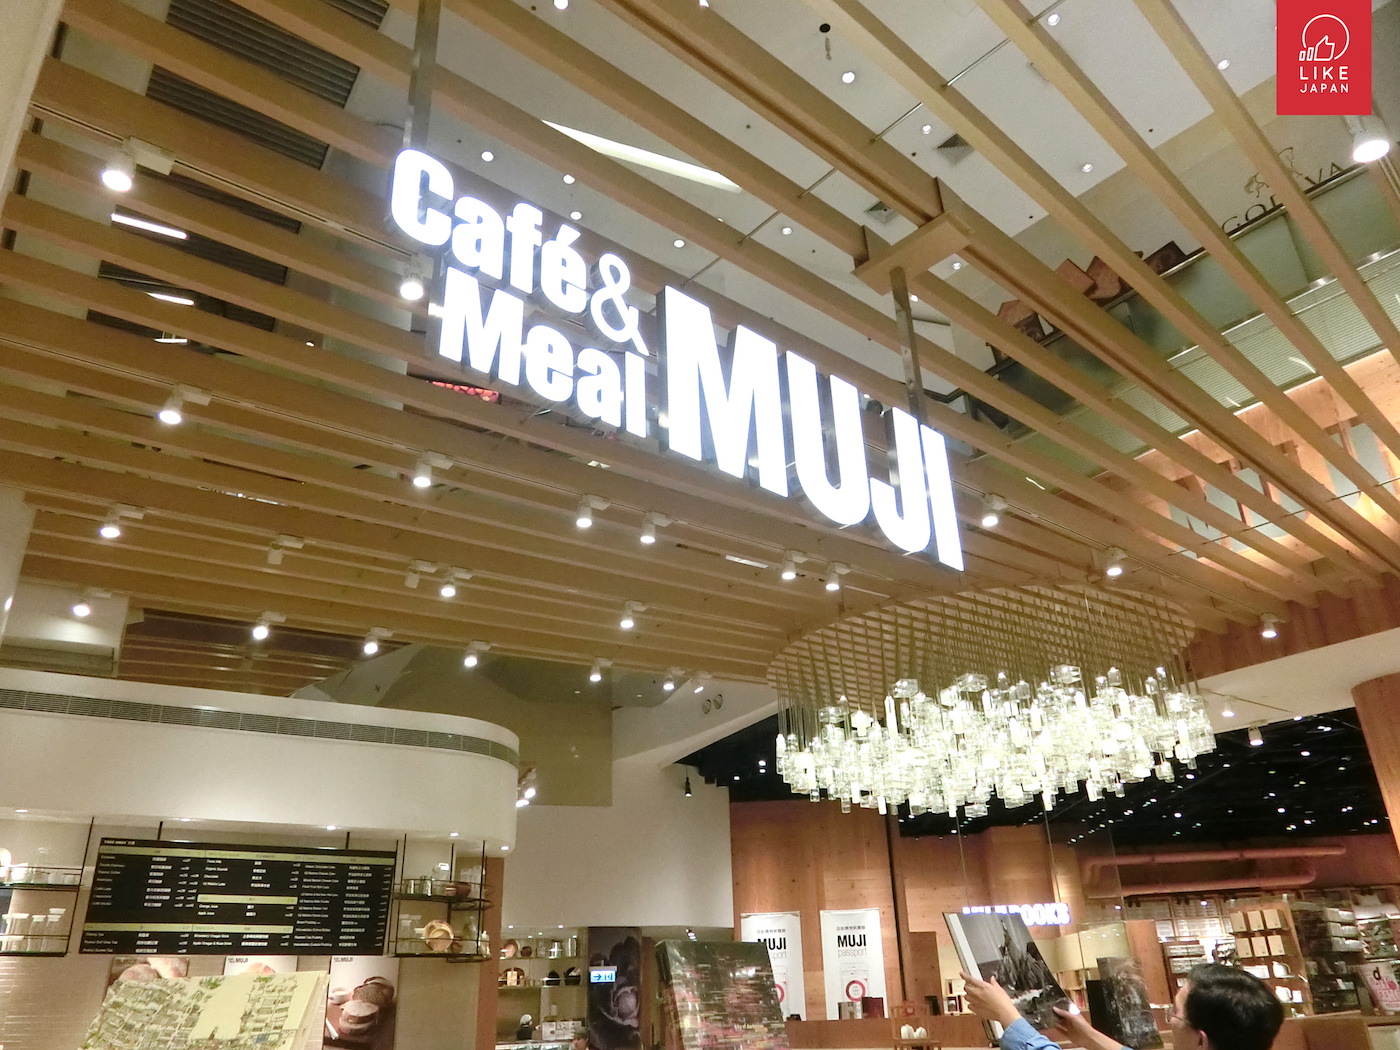 奧海城 MUJI Cafe 季節限定 抹茶甜品試食！